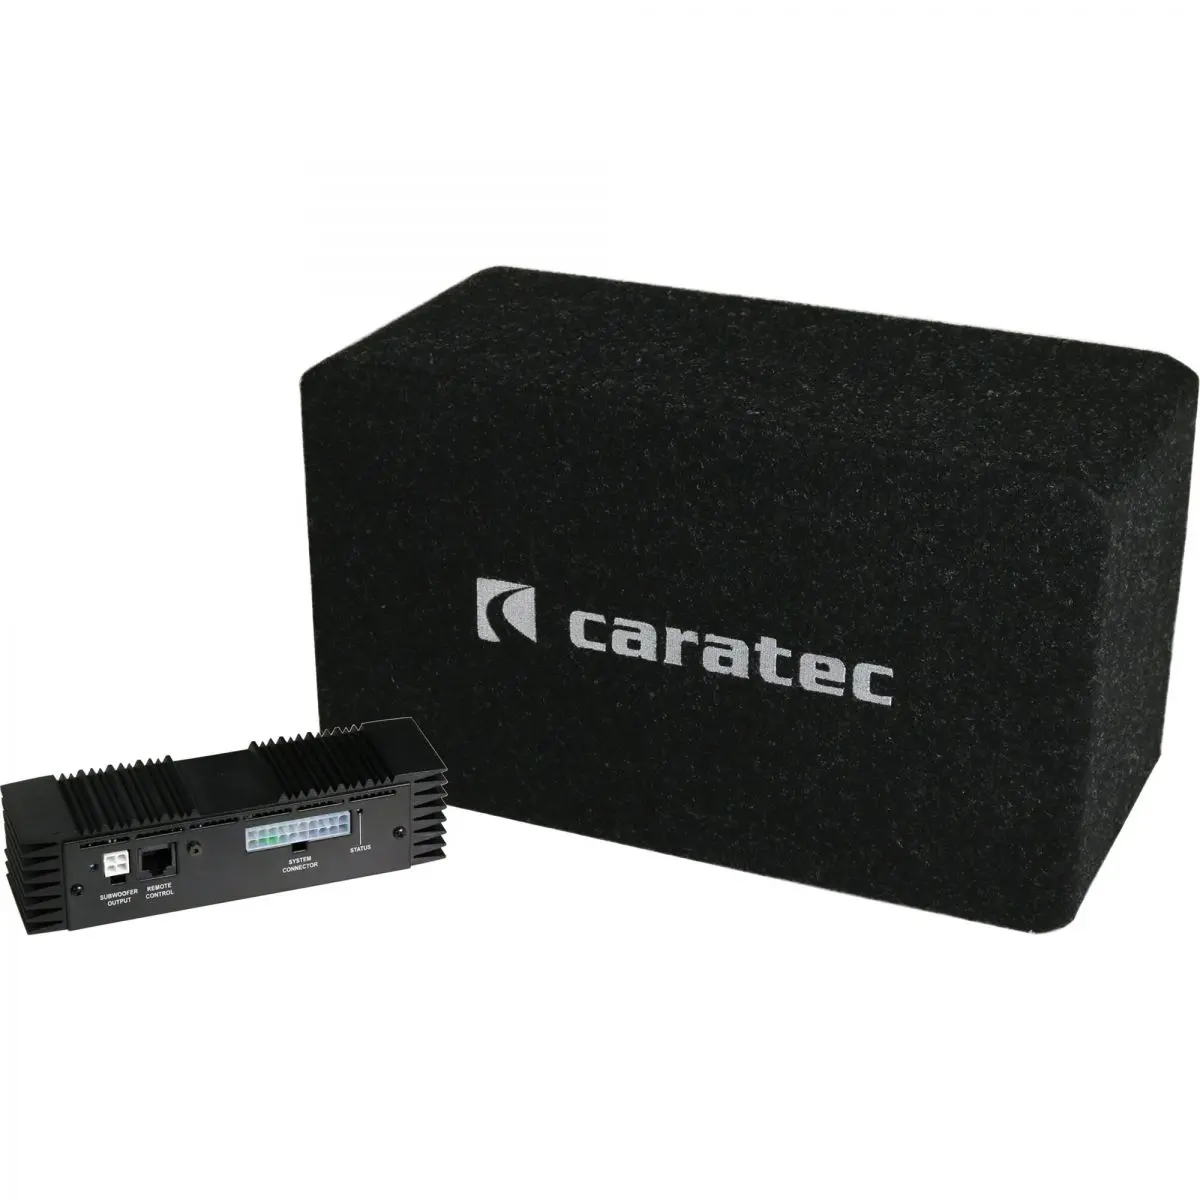 Caratec audio hangrendszer CAS207D Fiat Ducato-hoz 2006/07-től rádió előkészítéssel, - 4 csatornás